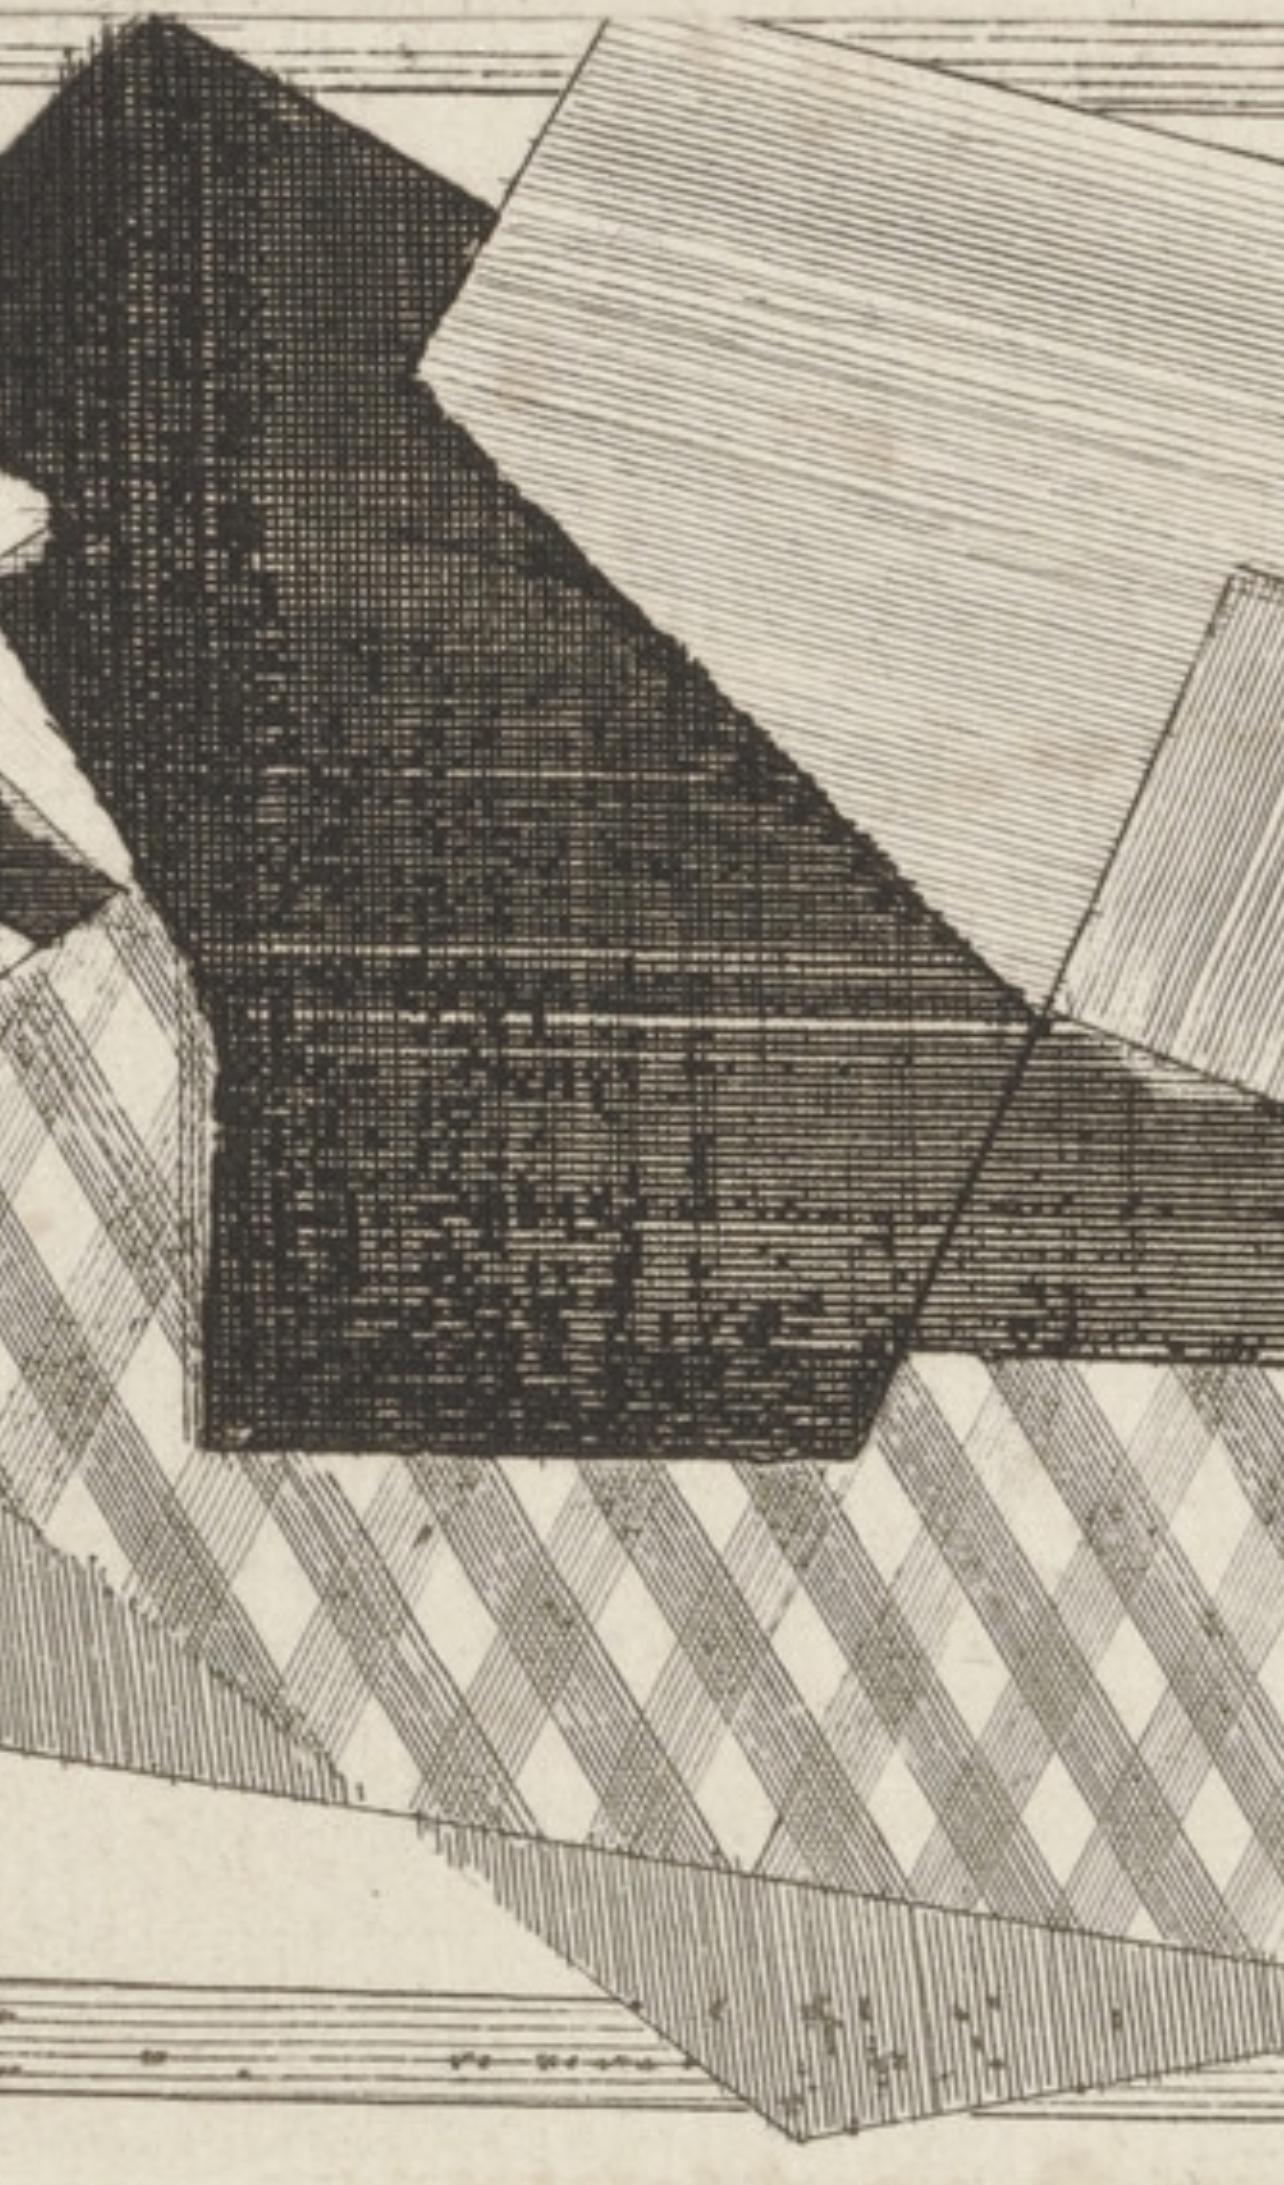 Villon, Le Cheval, Composition, Du cubisme (after) - Modern Print by Jacques Villon